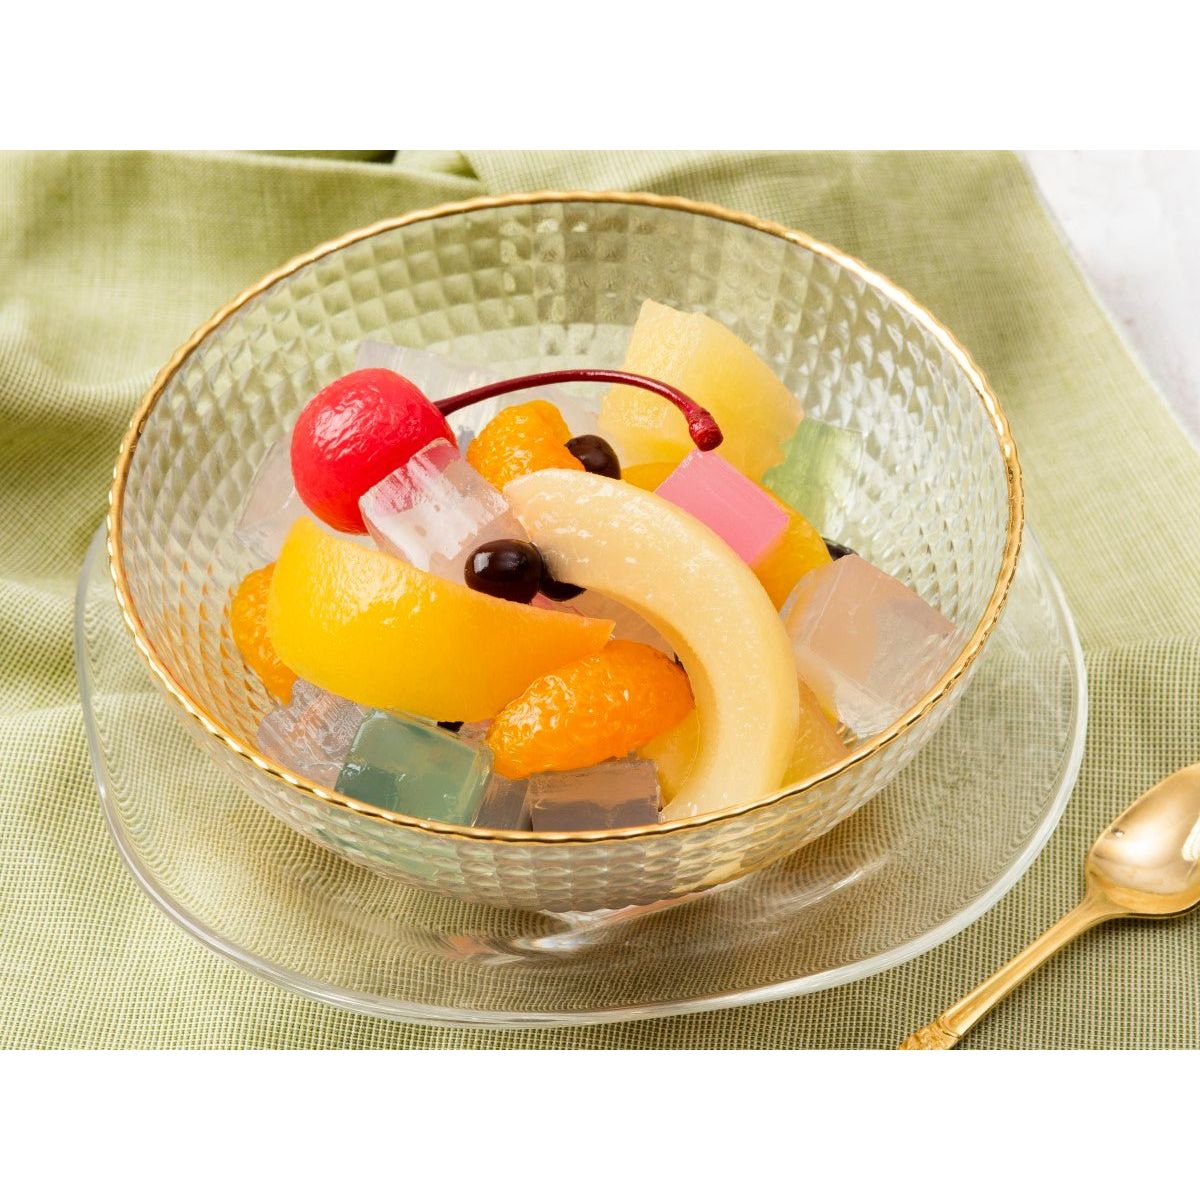 K&K Fruit Mitsu frijoles (5 tipos de frutas, agar, vainas rojas)